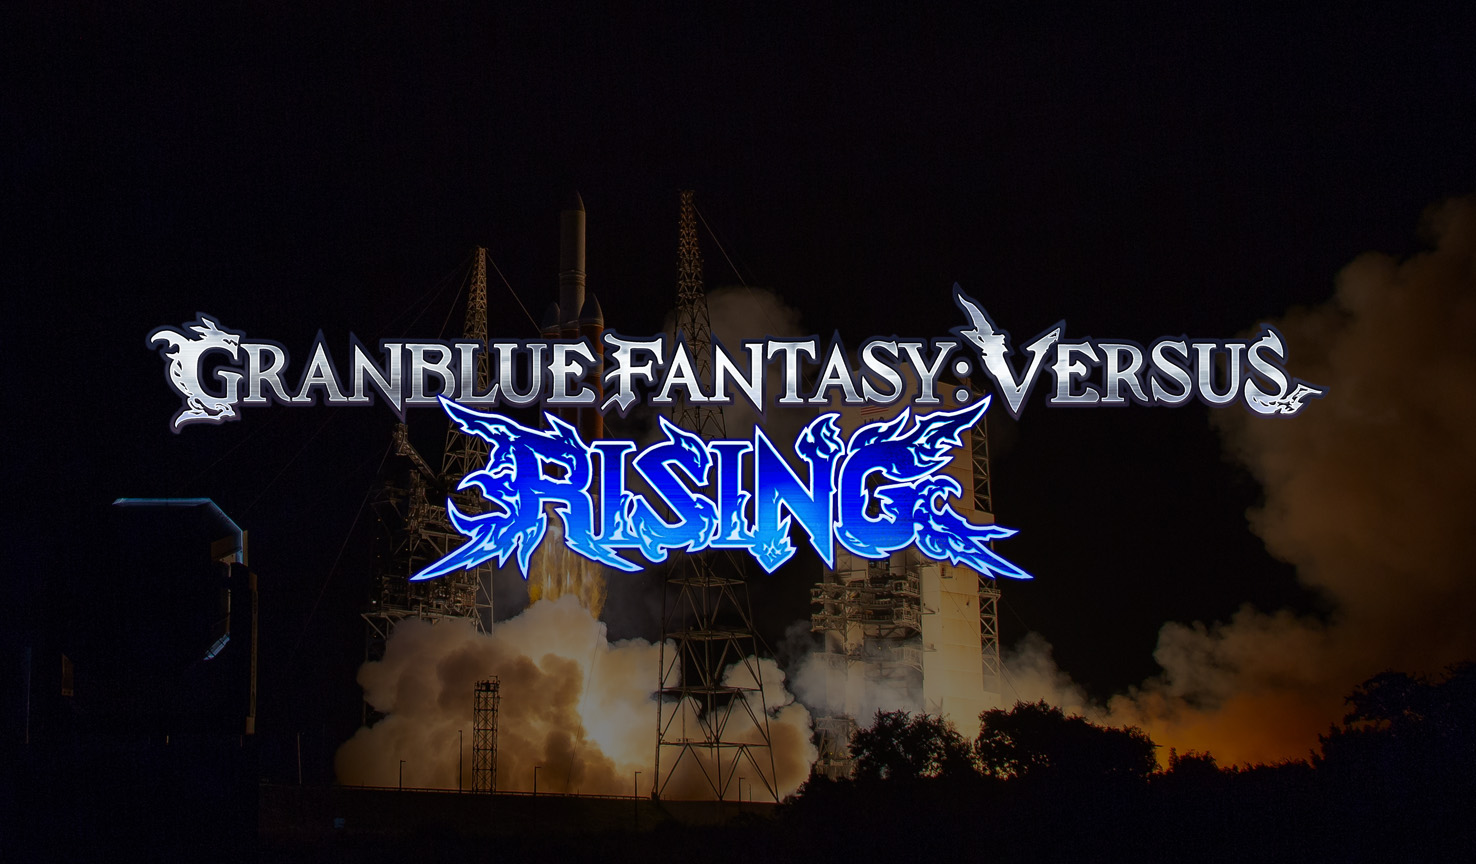 GranBlue Fantasy Versus: Rising